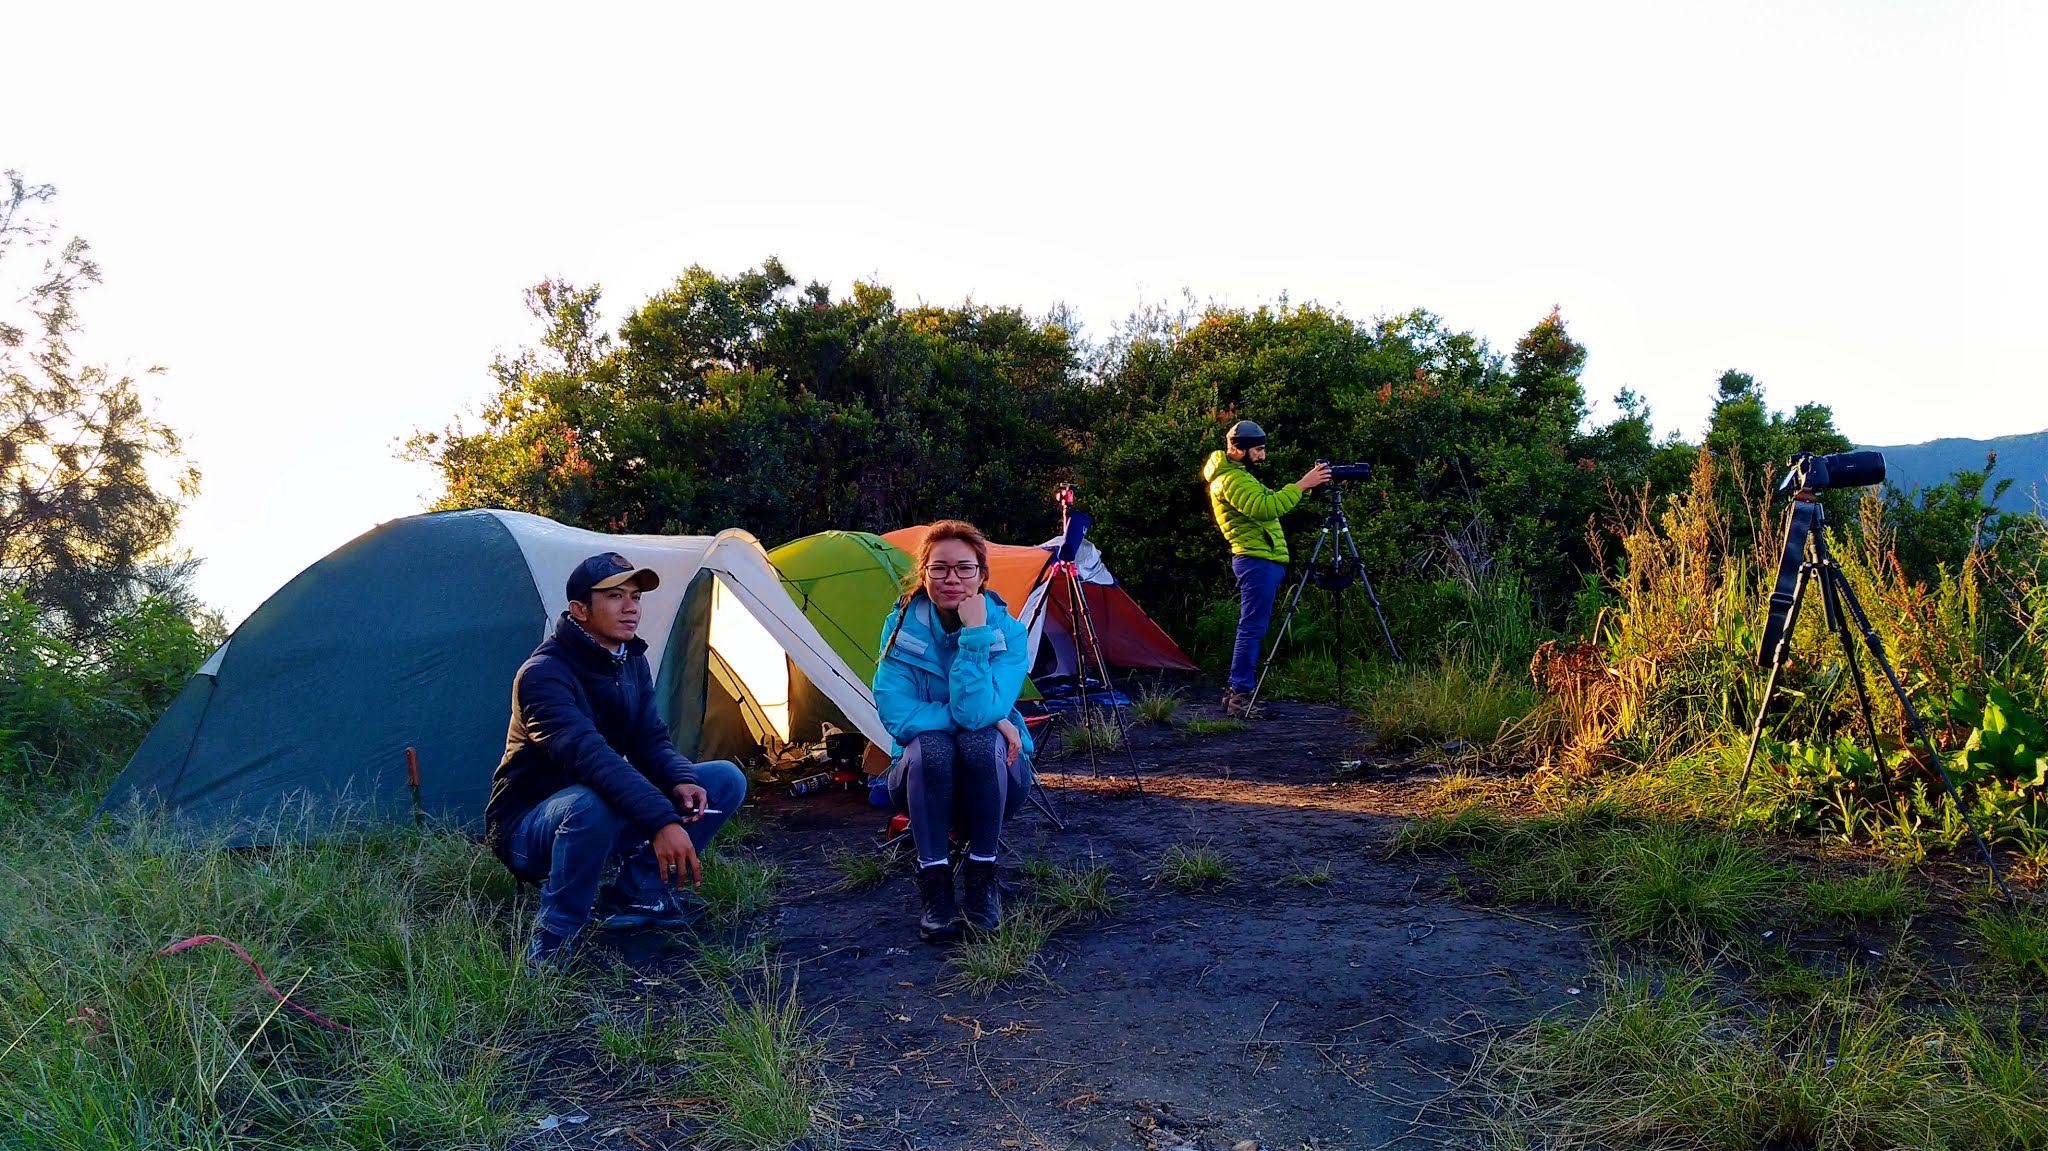 Camping at Kingkong peak Mount Bromo